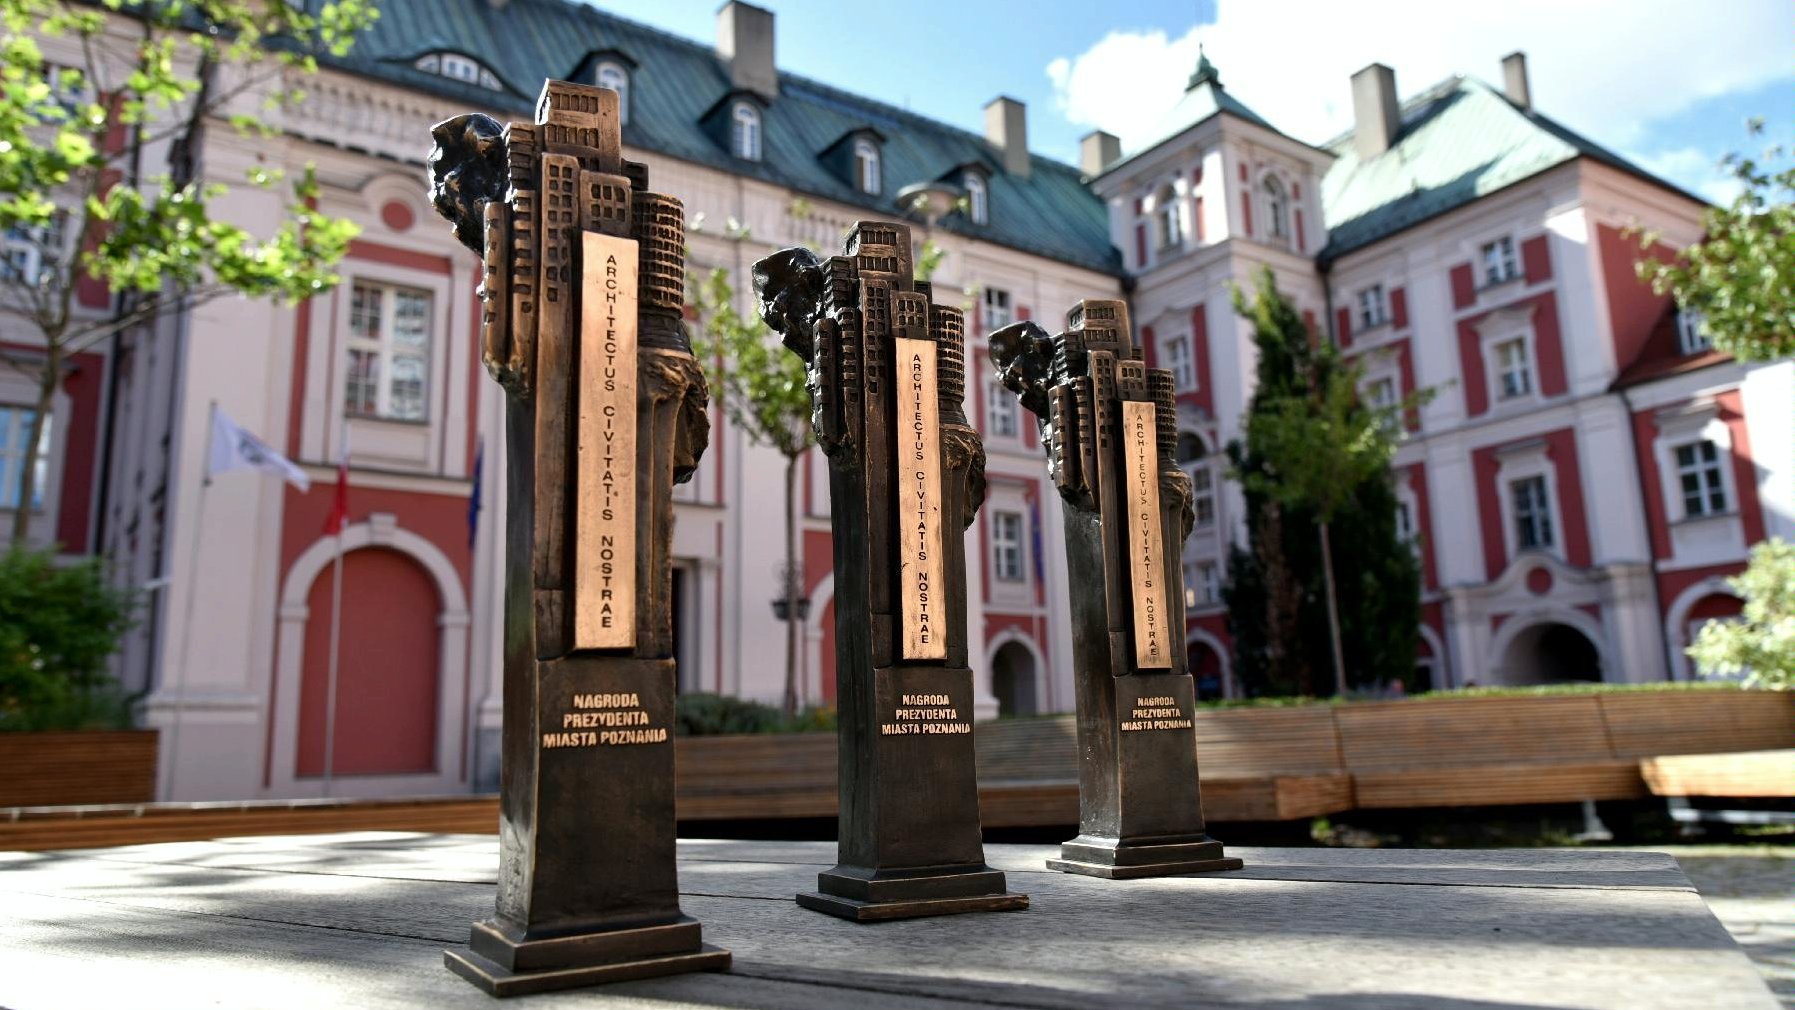 Zdjęcie przedstawia trzy statuetki Nagrody Prezydenta Miasta Poznania Architectus civitatis nostrae na tle budynku urzędu miasta przy pl. Kolegiackim.